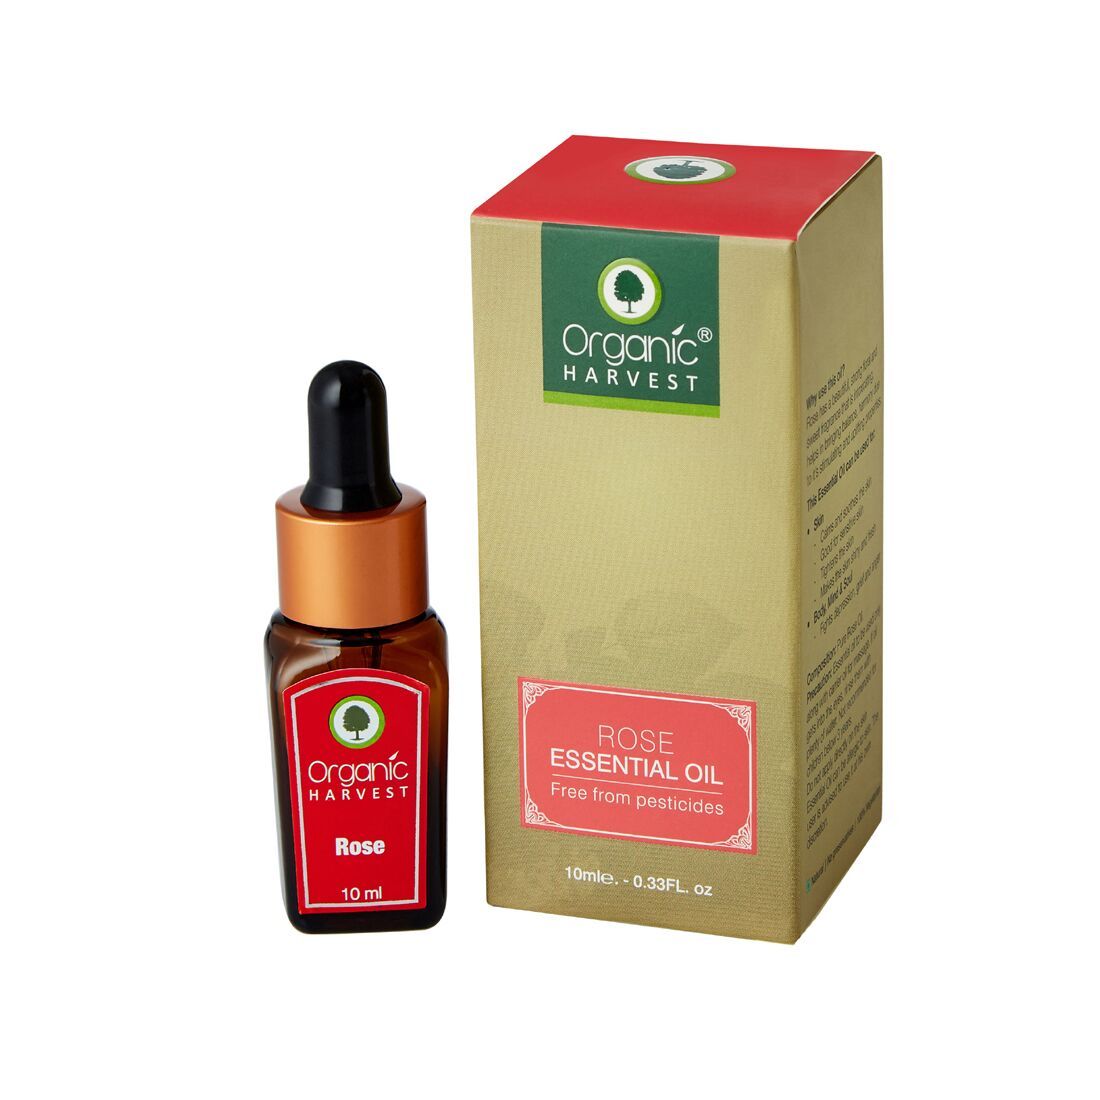 Buy Organic Harvest Rose Essential Oil (10 ml) - Purplle